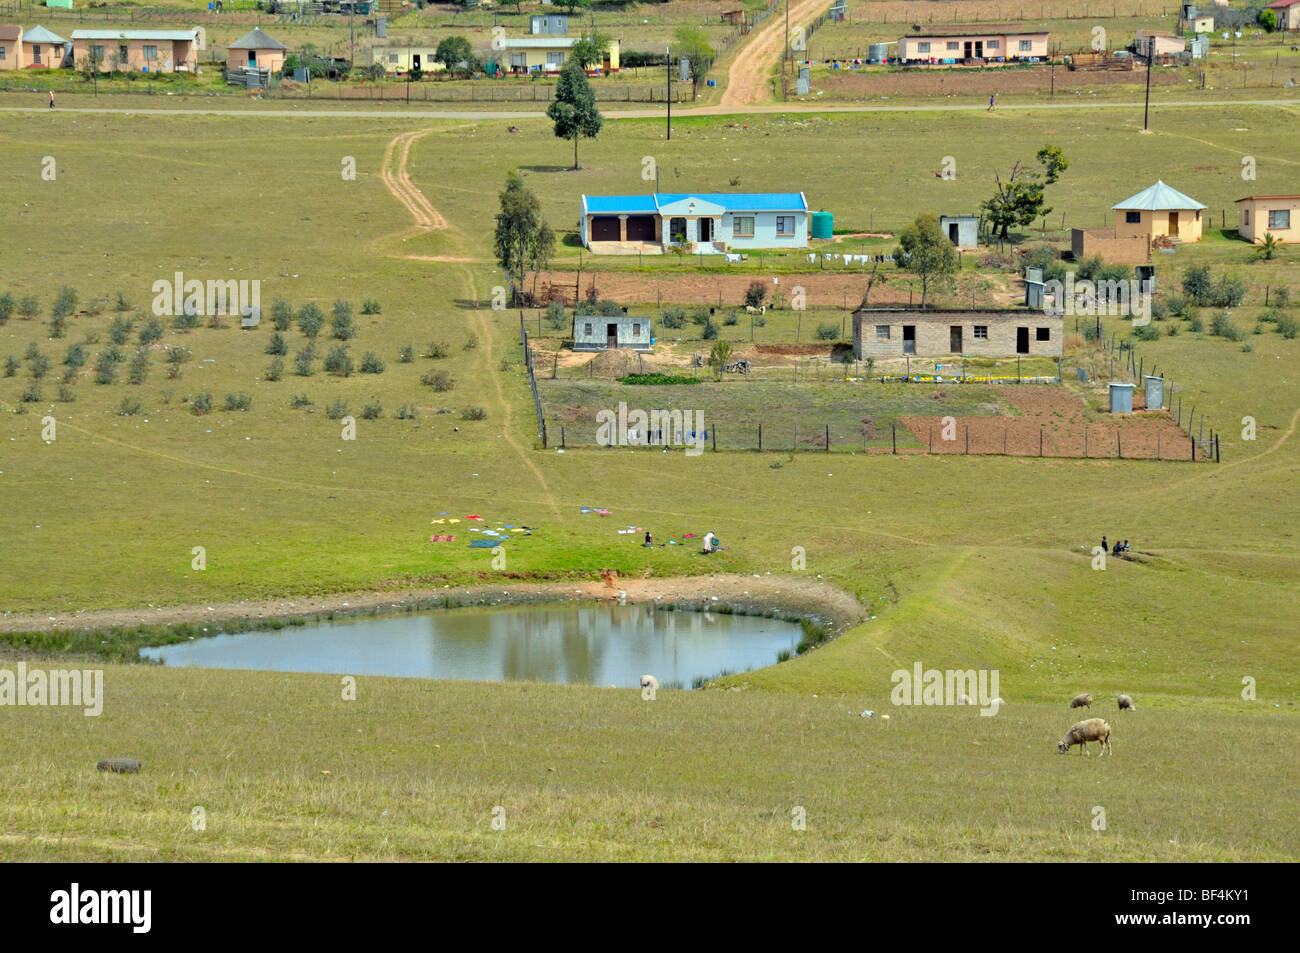 Maisons dans la région du Transkei, Province orientale du Cap, Afrique du Sud, l'Afrique Banque D'Images